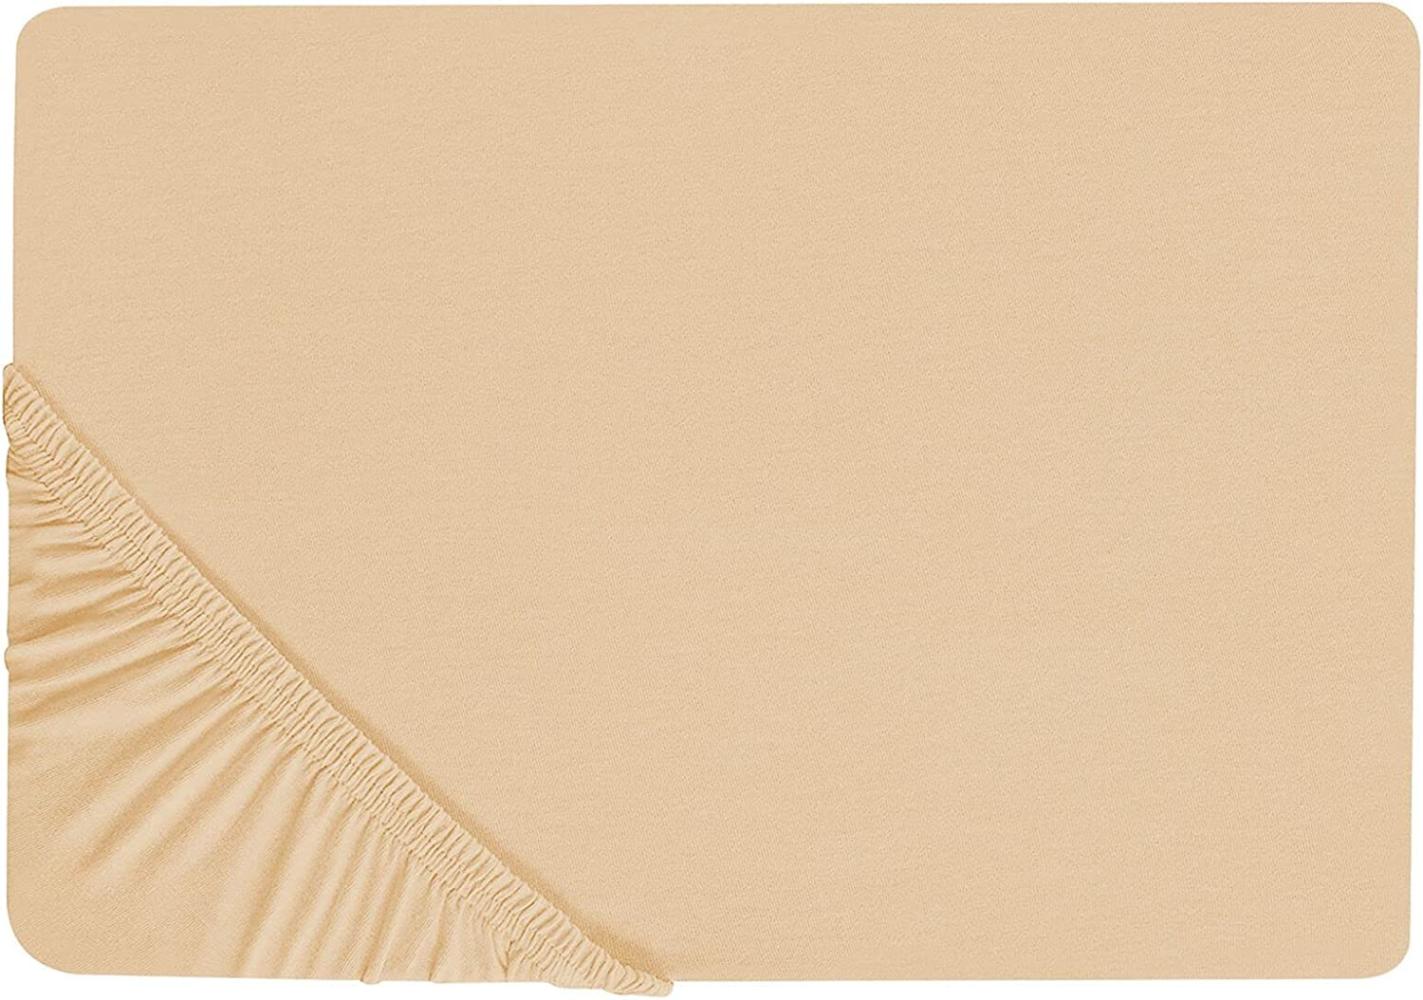 Spannbettlaken Baumwolle sandbeige 140 x 200 cm JANBU Bild 1